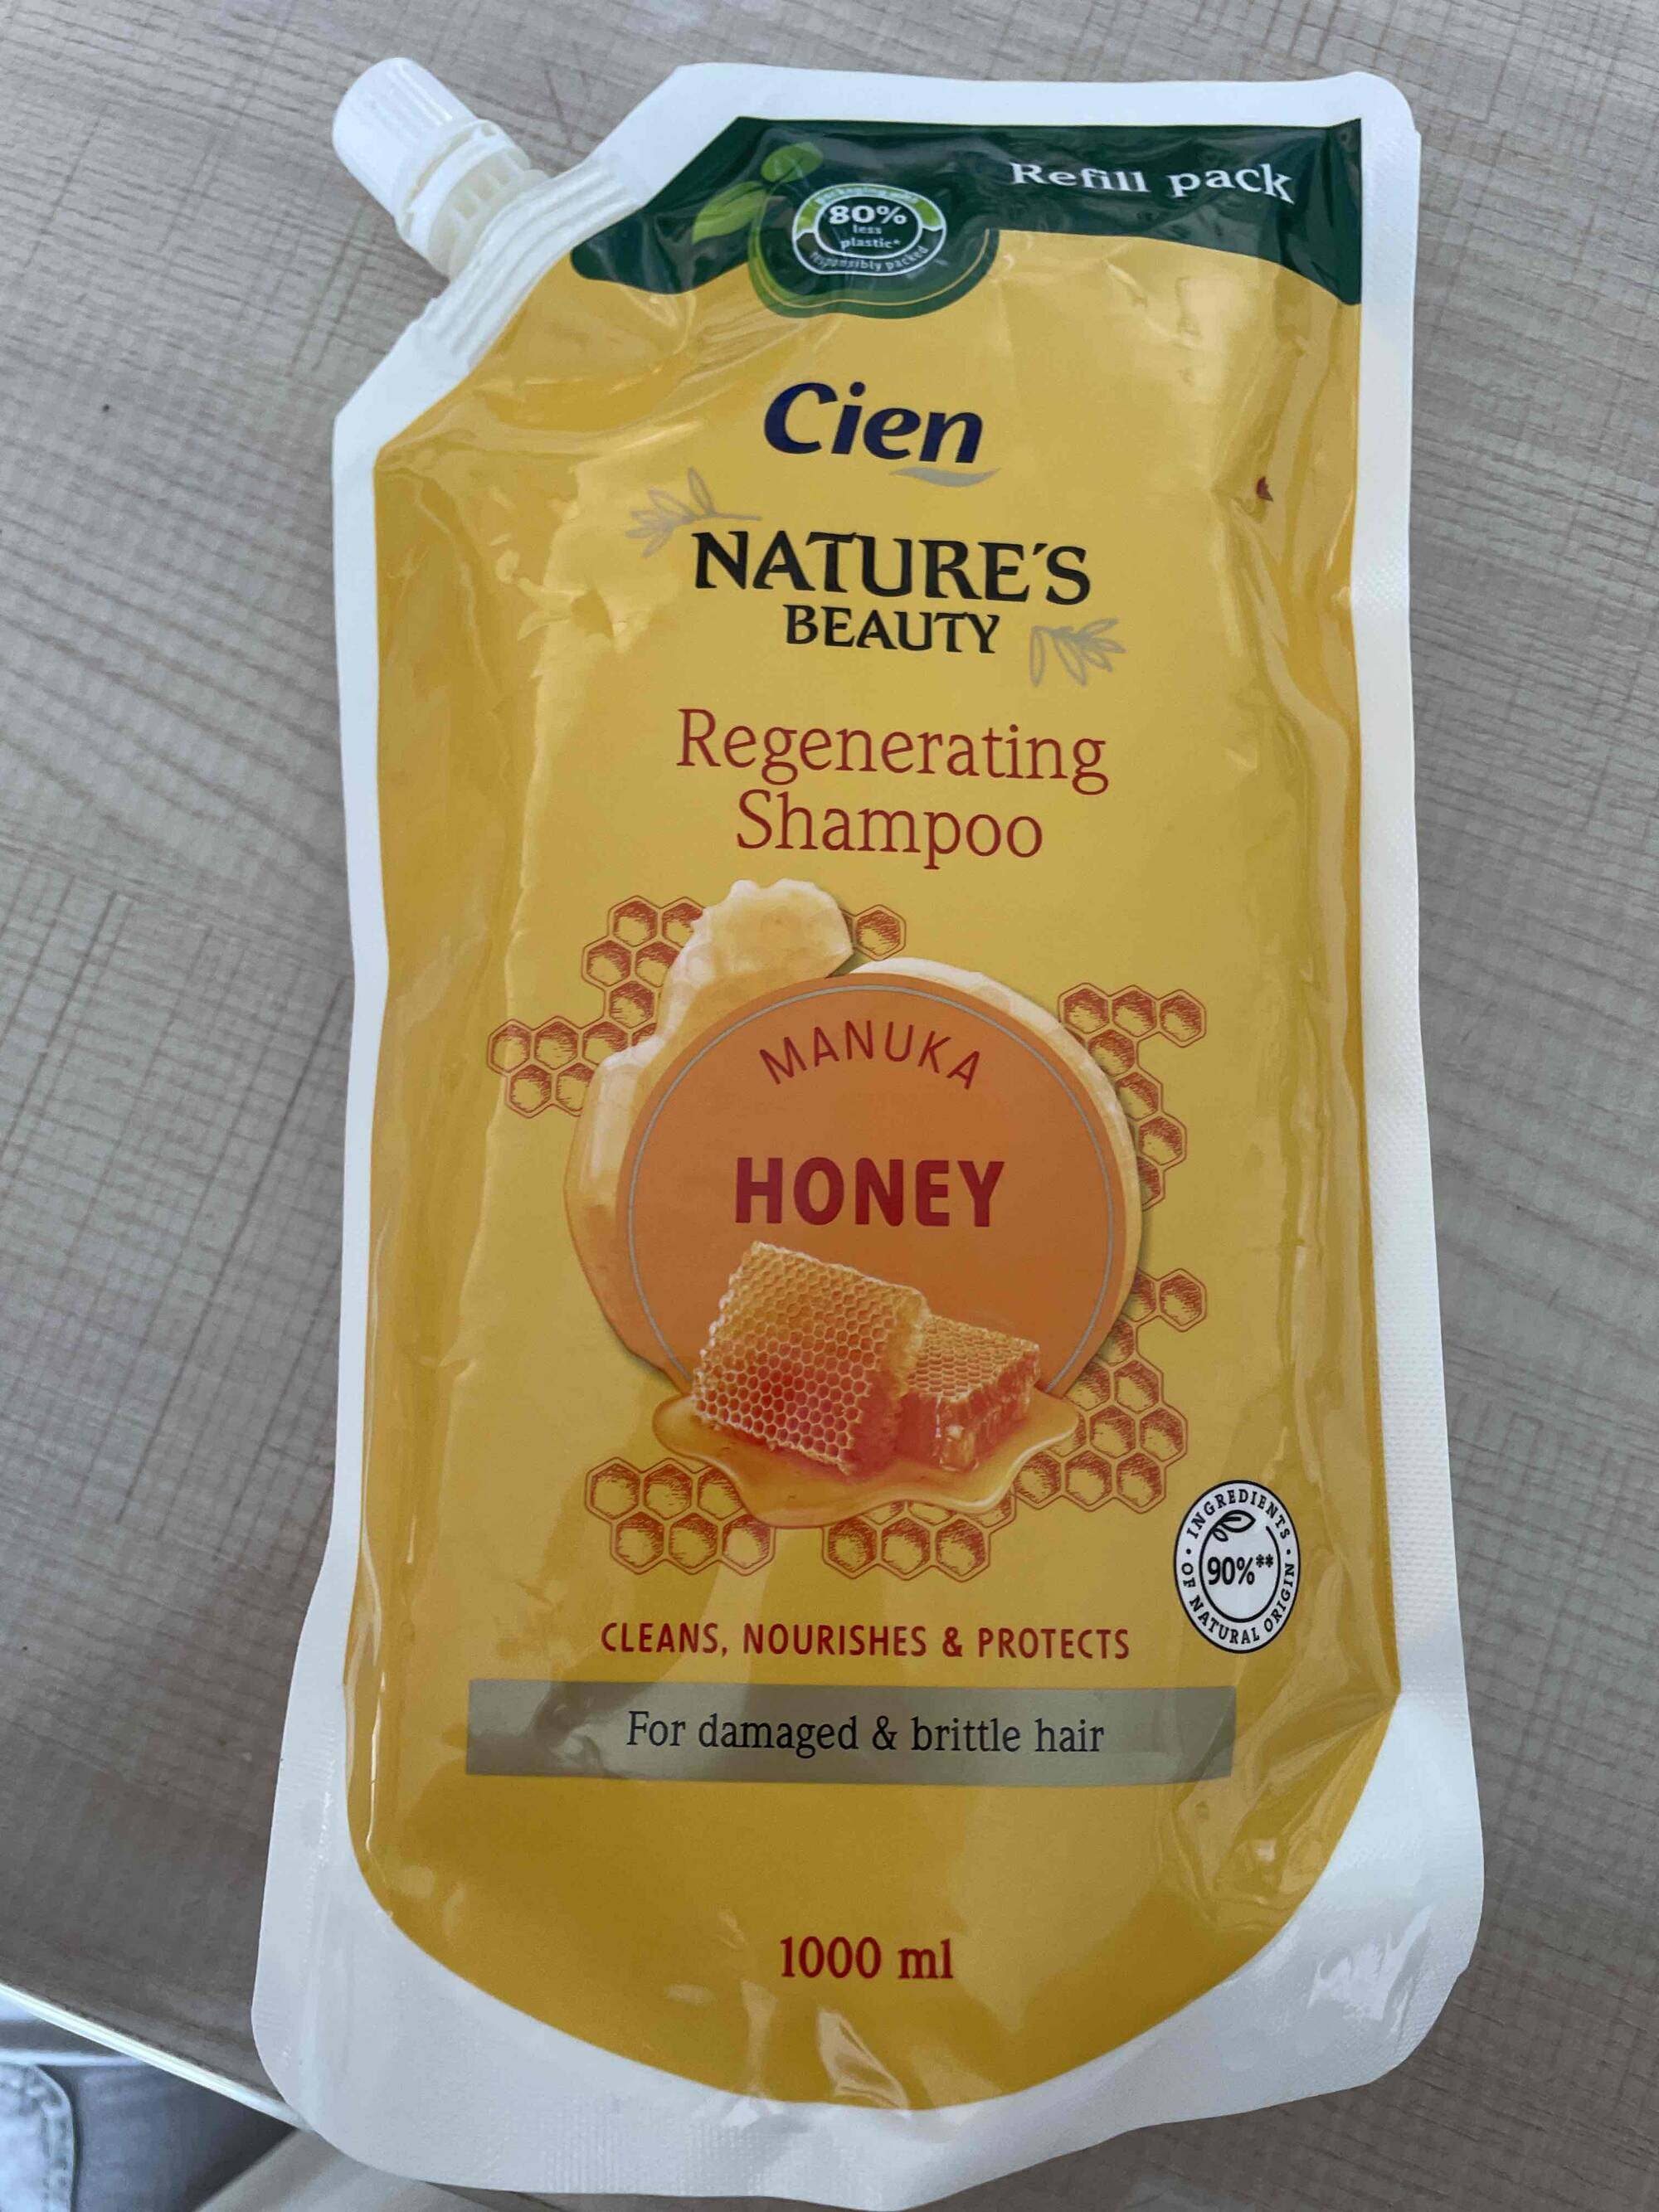 CIEN - Nature's beauty - Regenerating shampoo